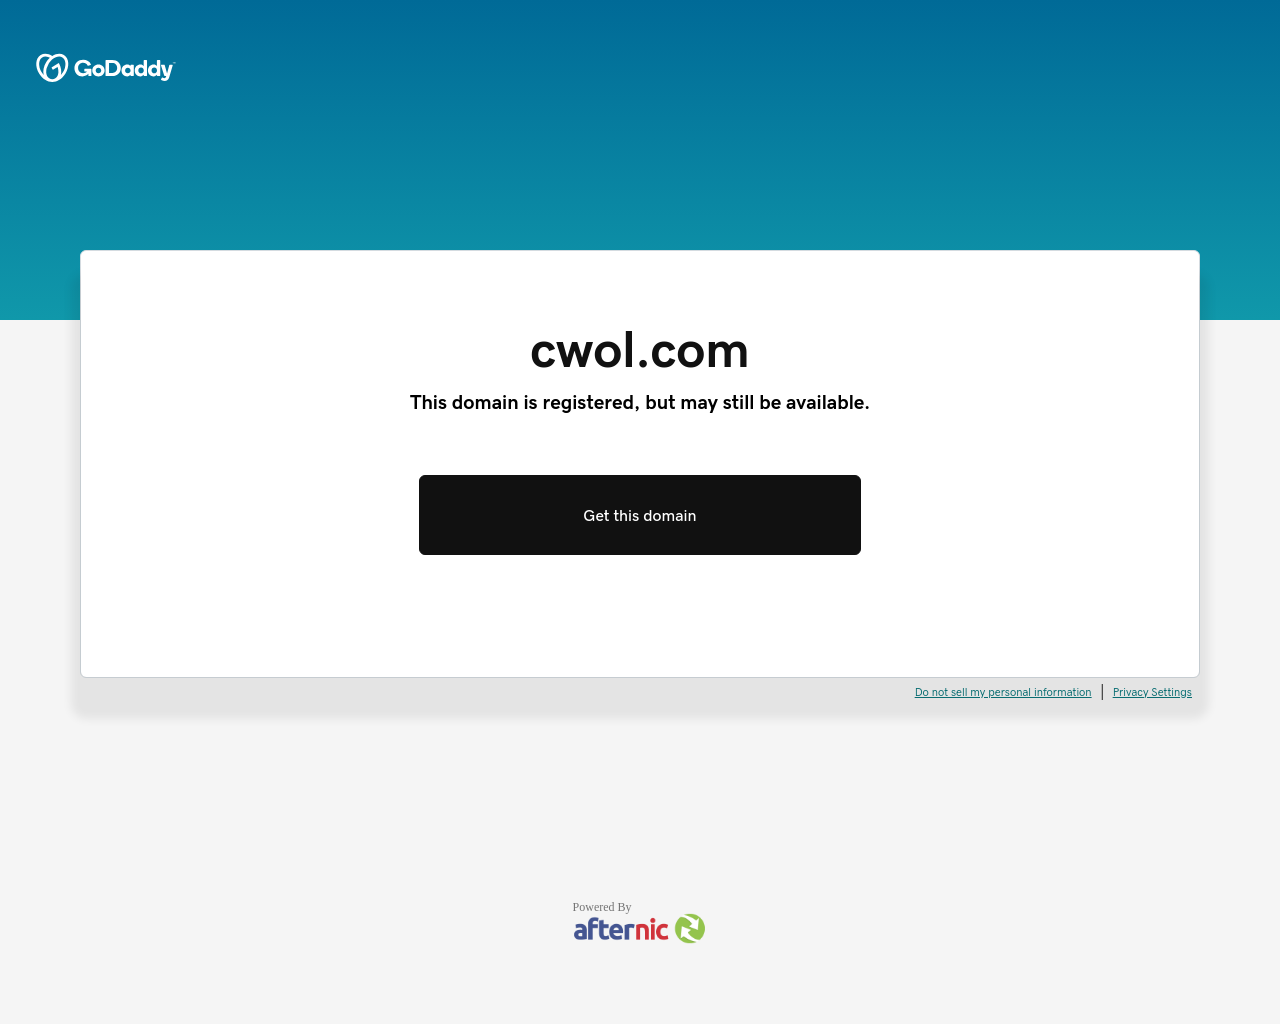 cwol.com